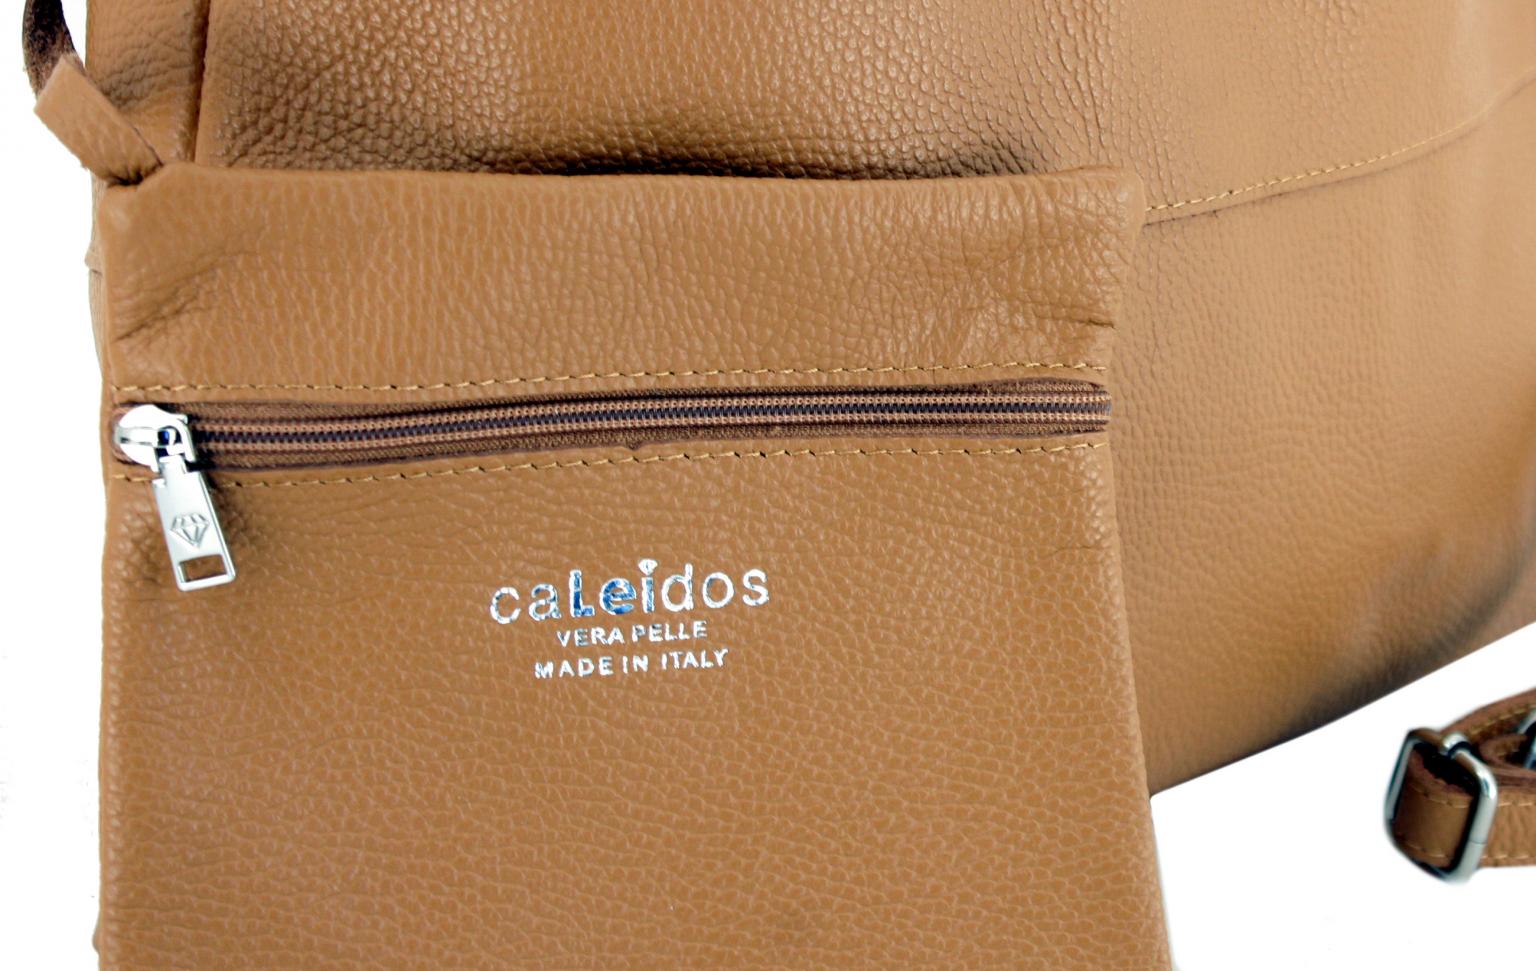 Caleidos Jeansblau italienische Handtasche Echtleder